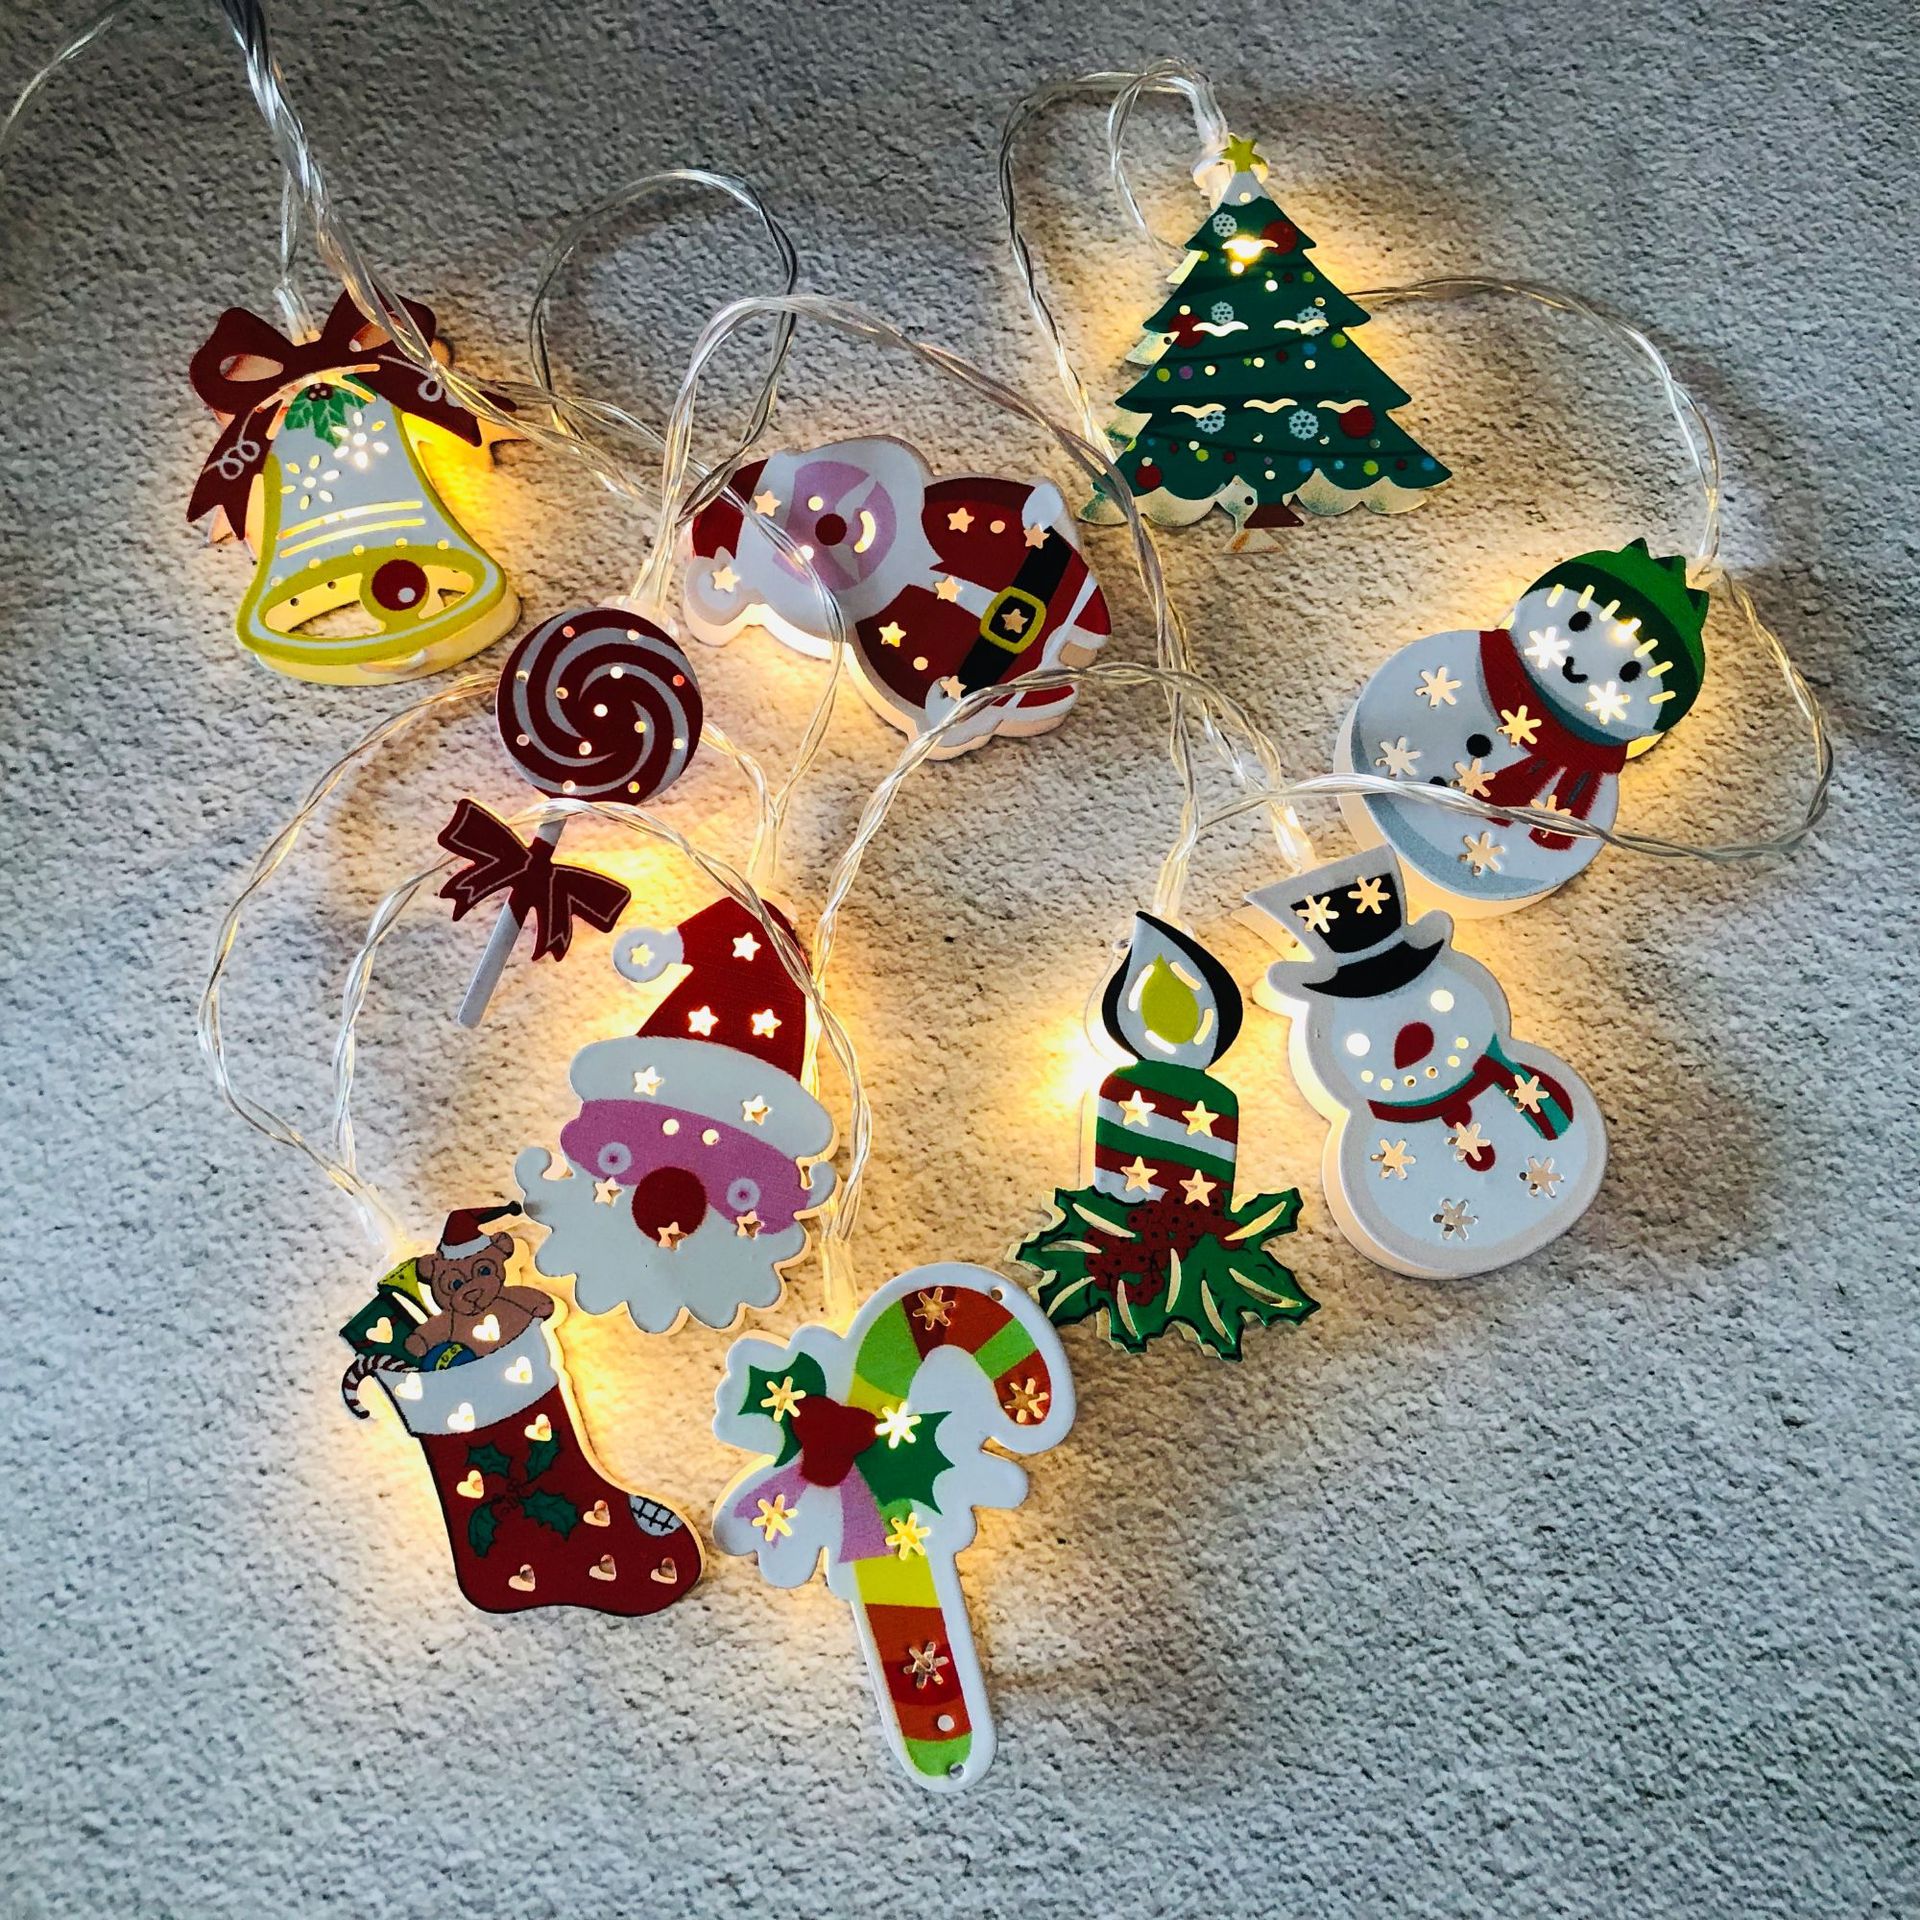 イルミネーションライト 可愛い サンタ 装飾 クリスマス飾り 飾り 二個セット LED ランタン 可愛い クリスマス飾り 飾り USB式 部屋 玄関 飾り 装飾 クリスマス ハロウィン 